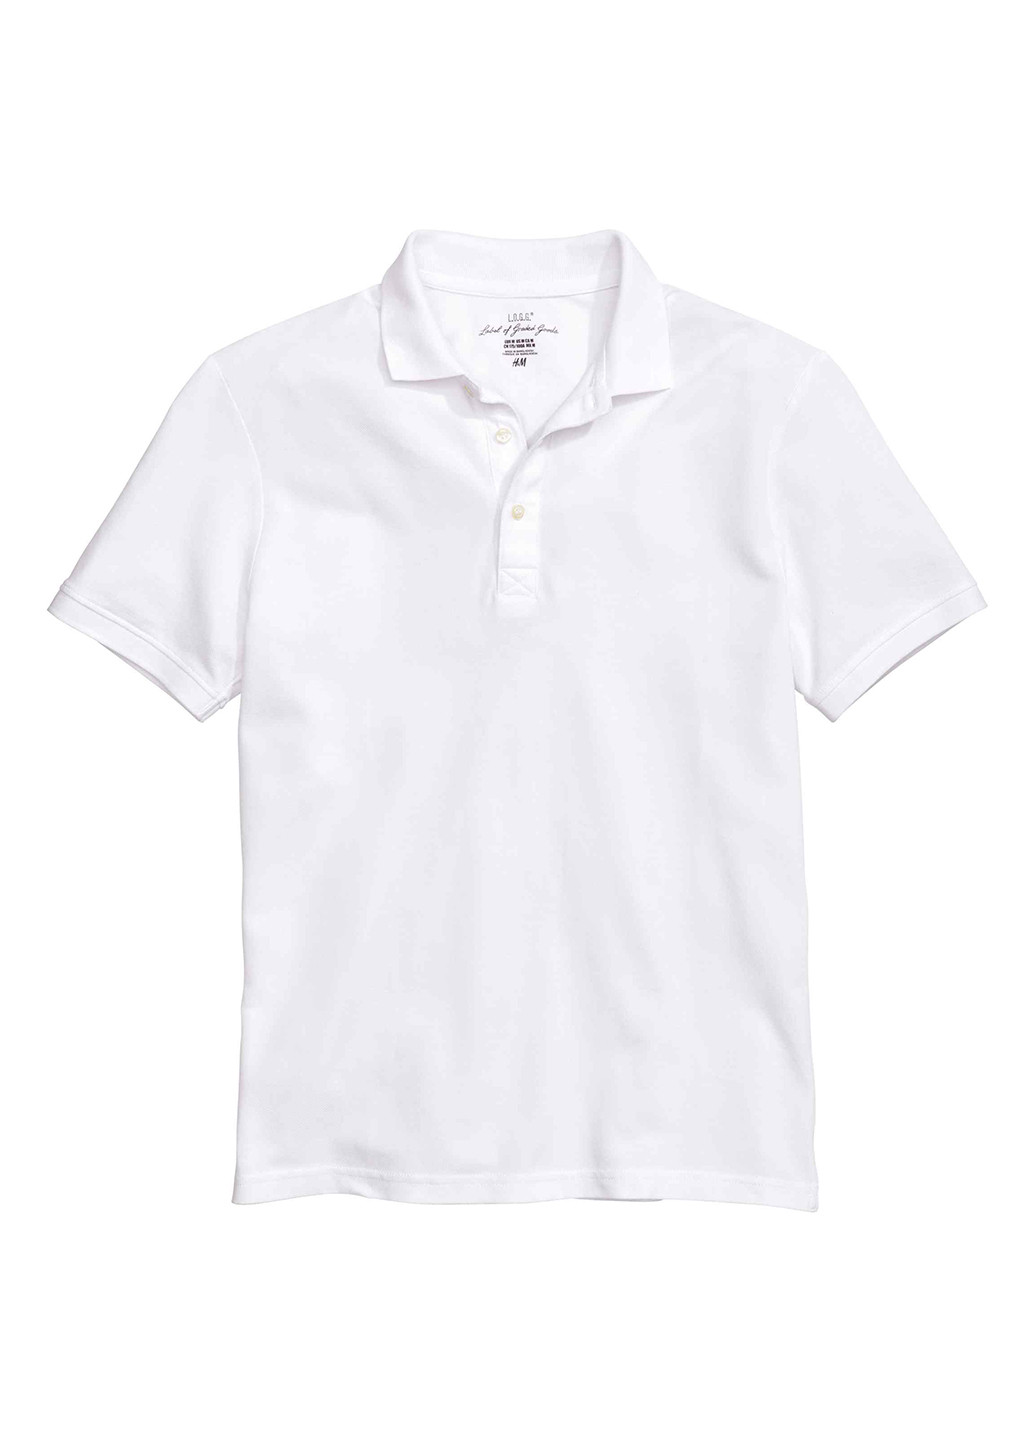 Белая футболка-поло для мужчин H&M однотонная